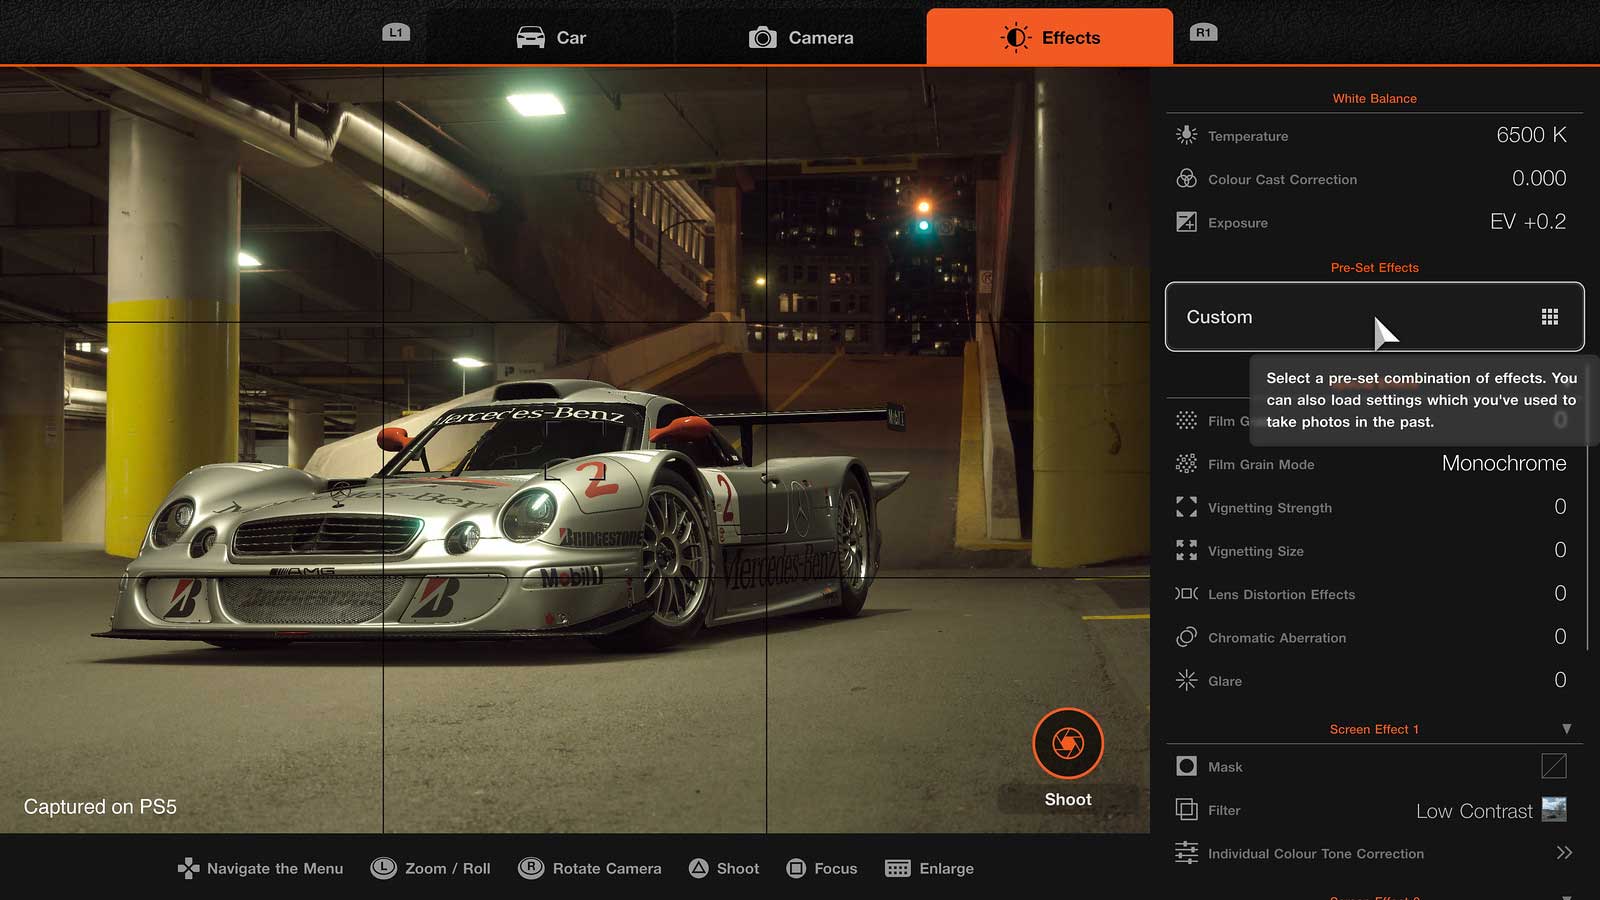 حالت Scapes بازی Gran Turismo 7 پلی استیشن 5 برای تصویربرداری پرجزئیات از ماشین های زیبا